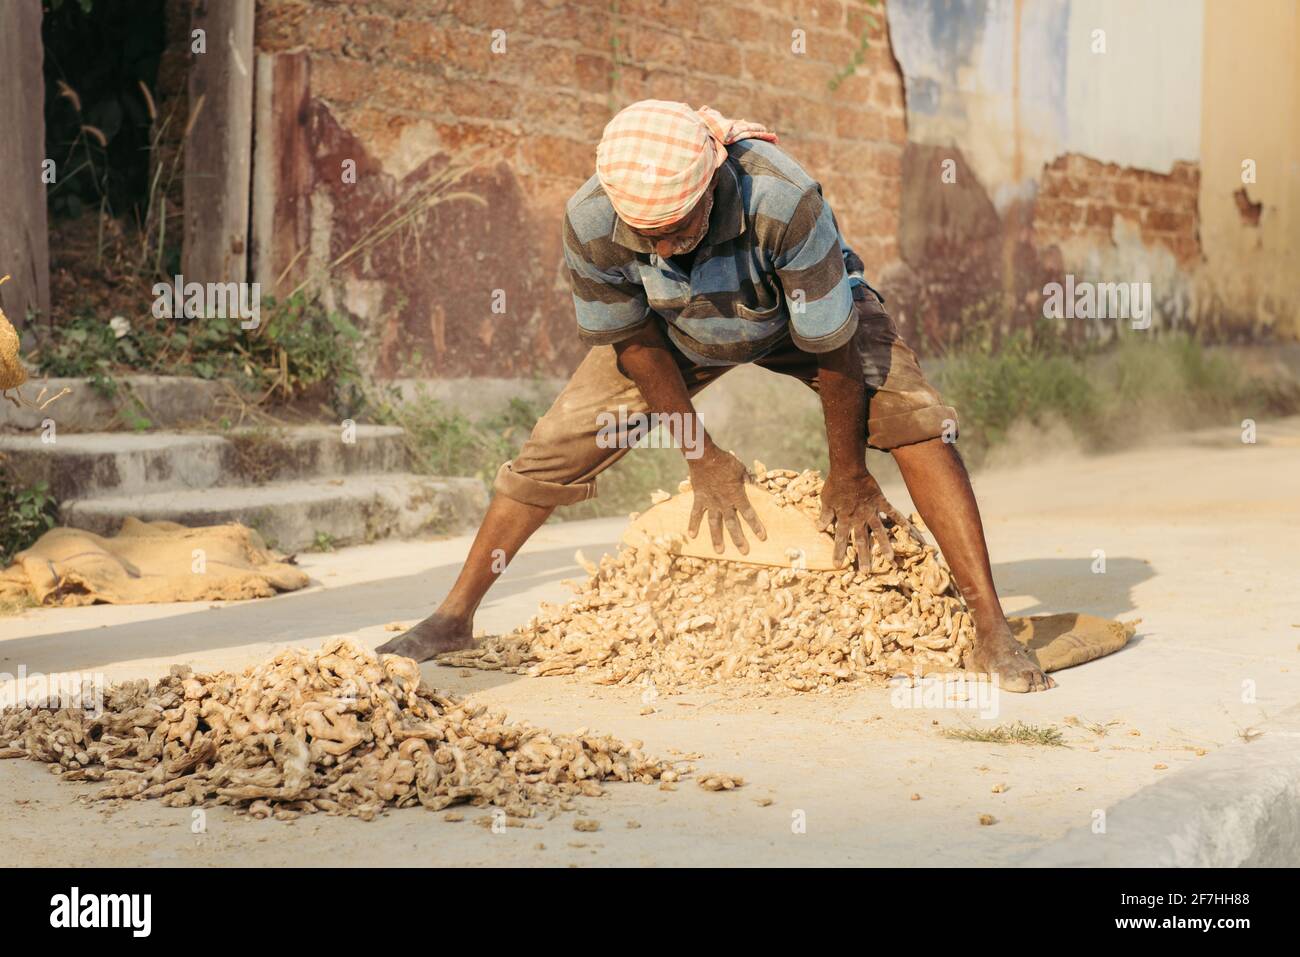 Kochi, Indien - 16. Januar 2016: Lokaler indischer Arbeiter sortiert auf den Straßen im alten Stadtteil Mattancherry Ingwer-Wurzeln-Gewürze Stockfoto